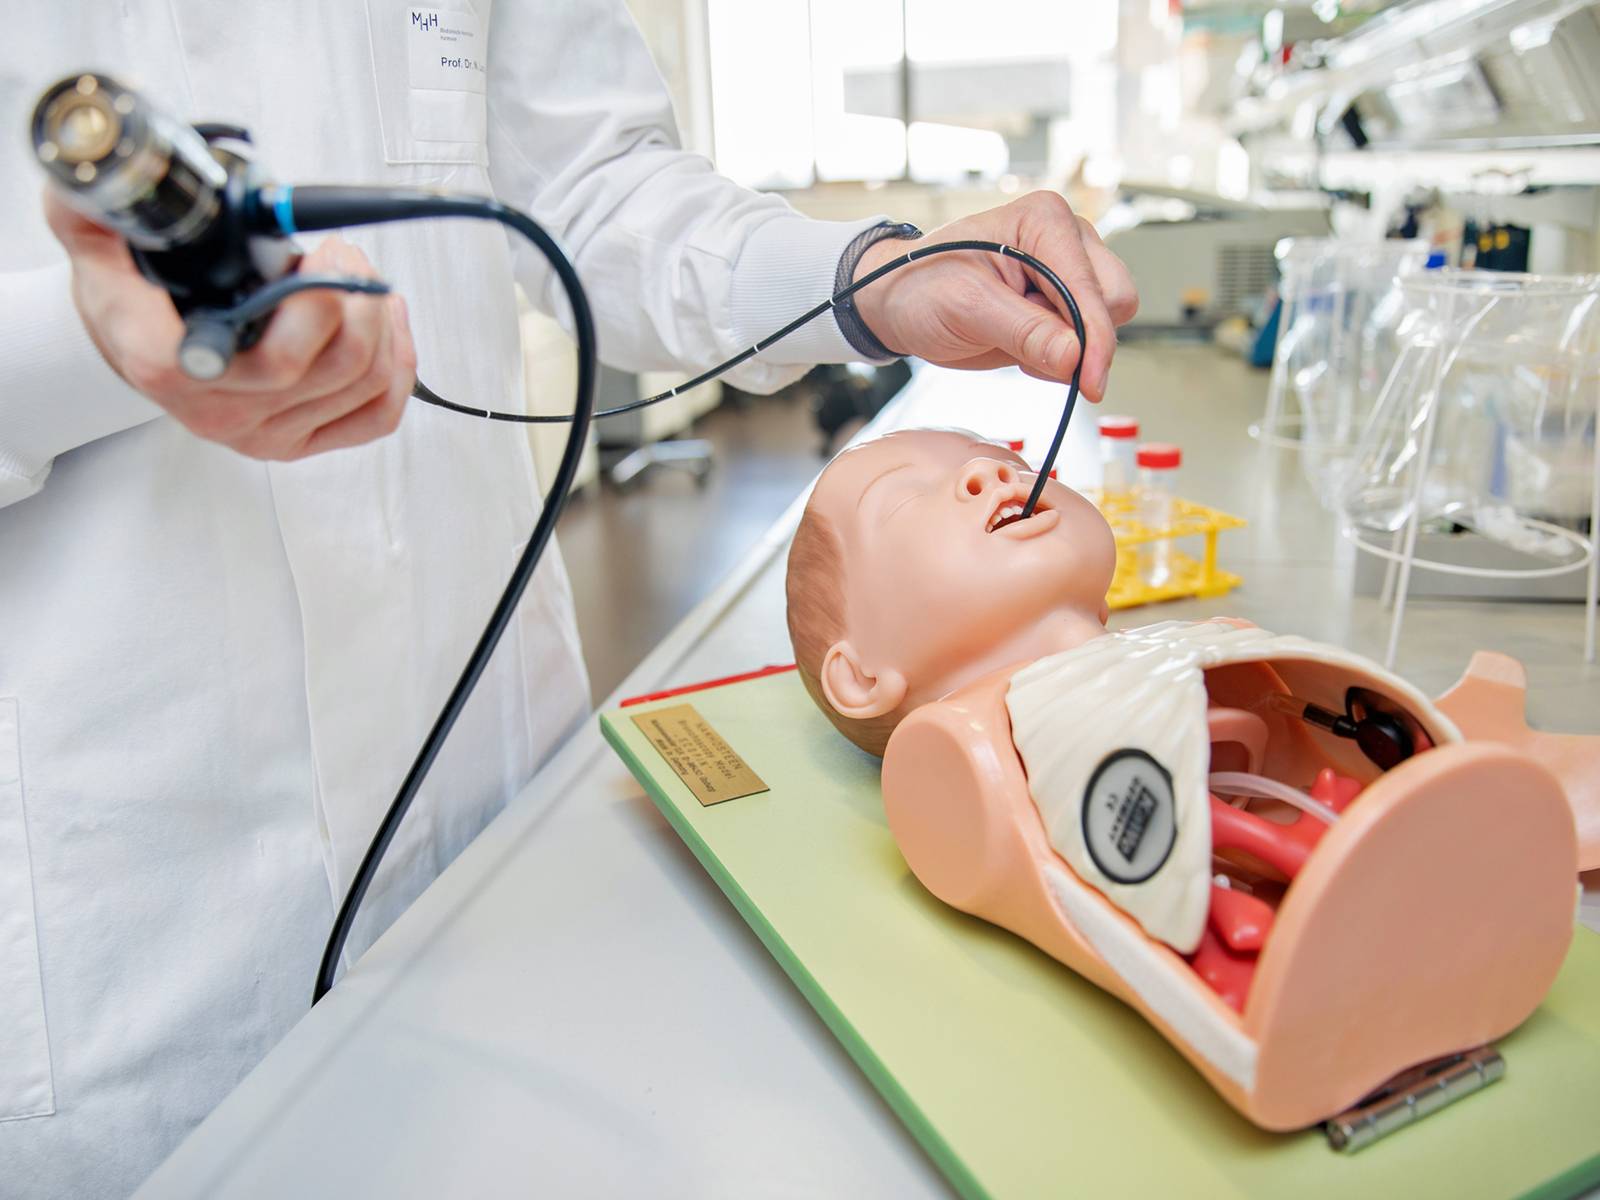 Symbolische medizinische Behandlung am Torso einer Puppe eines Kleinkindes.